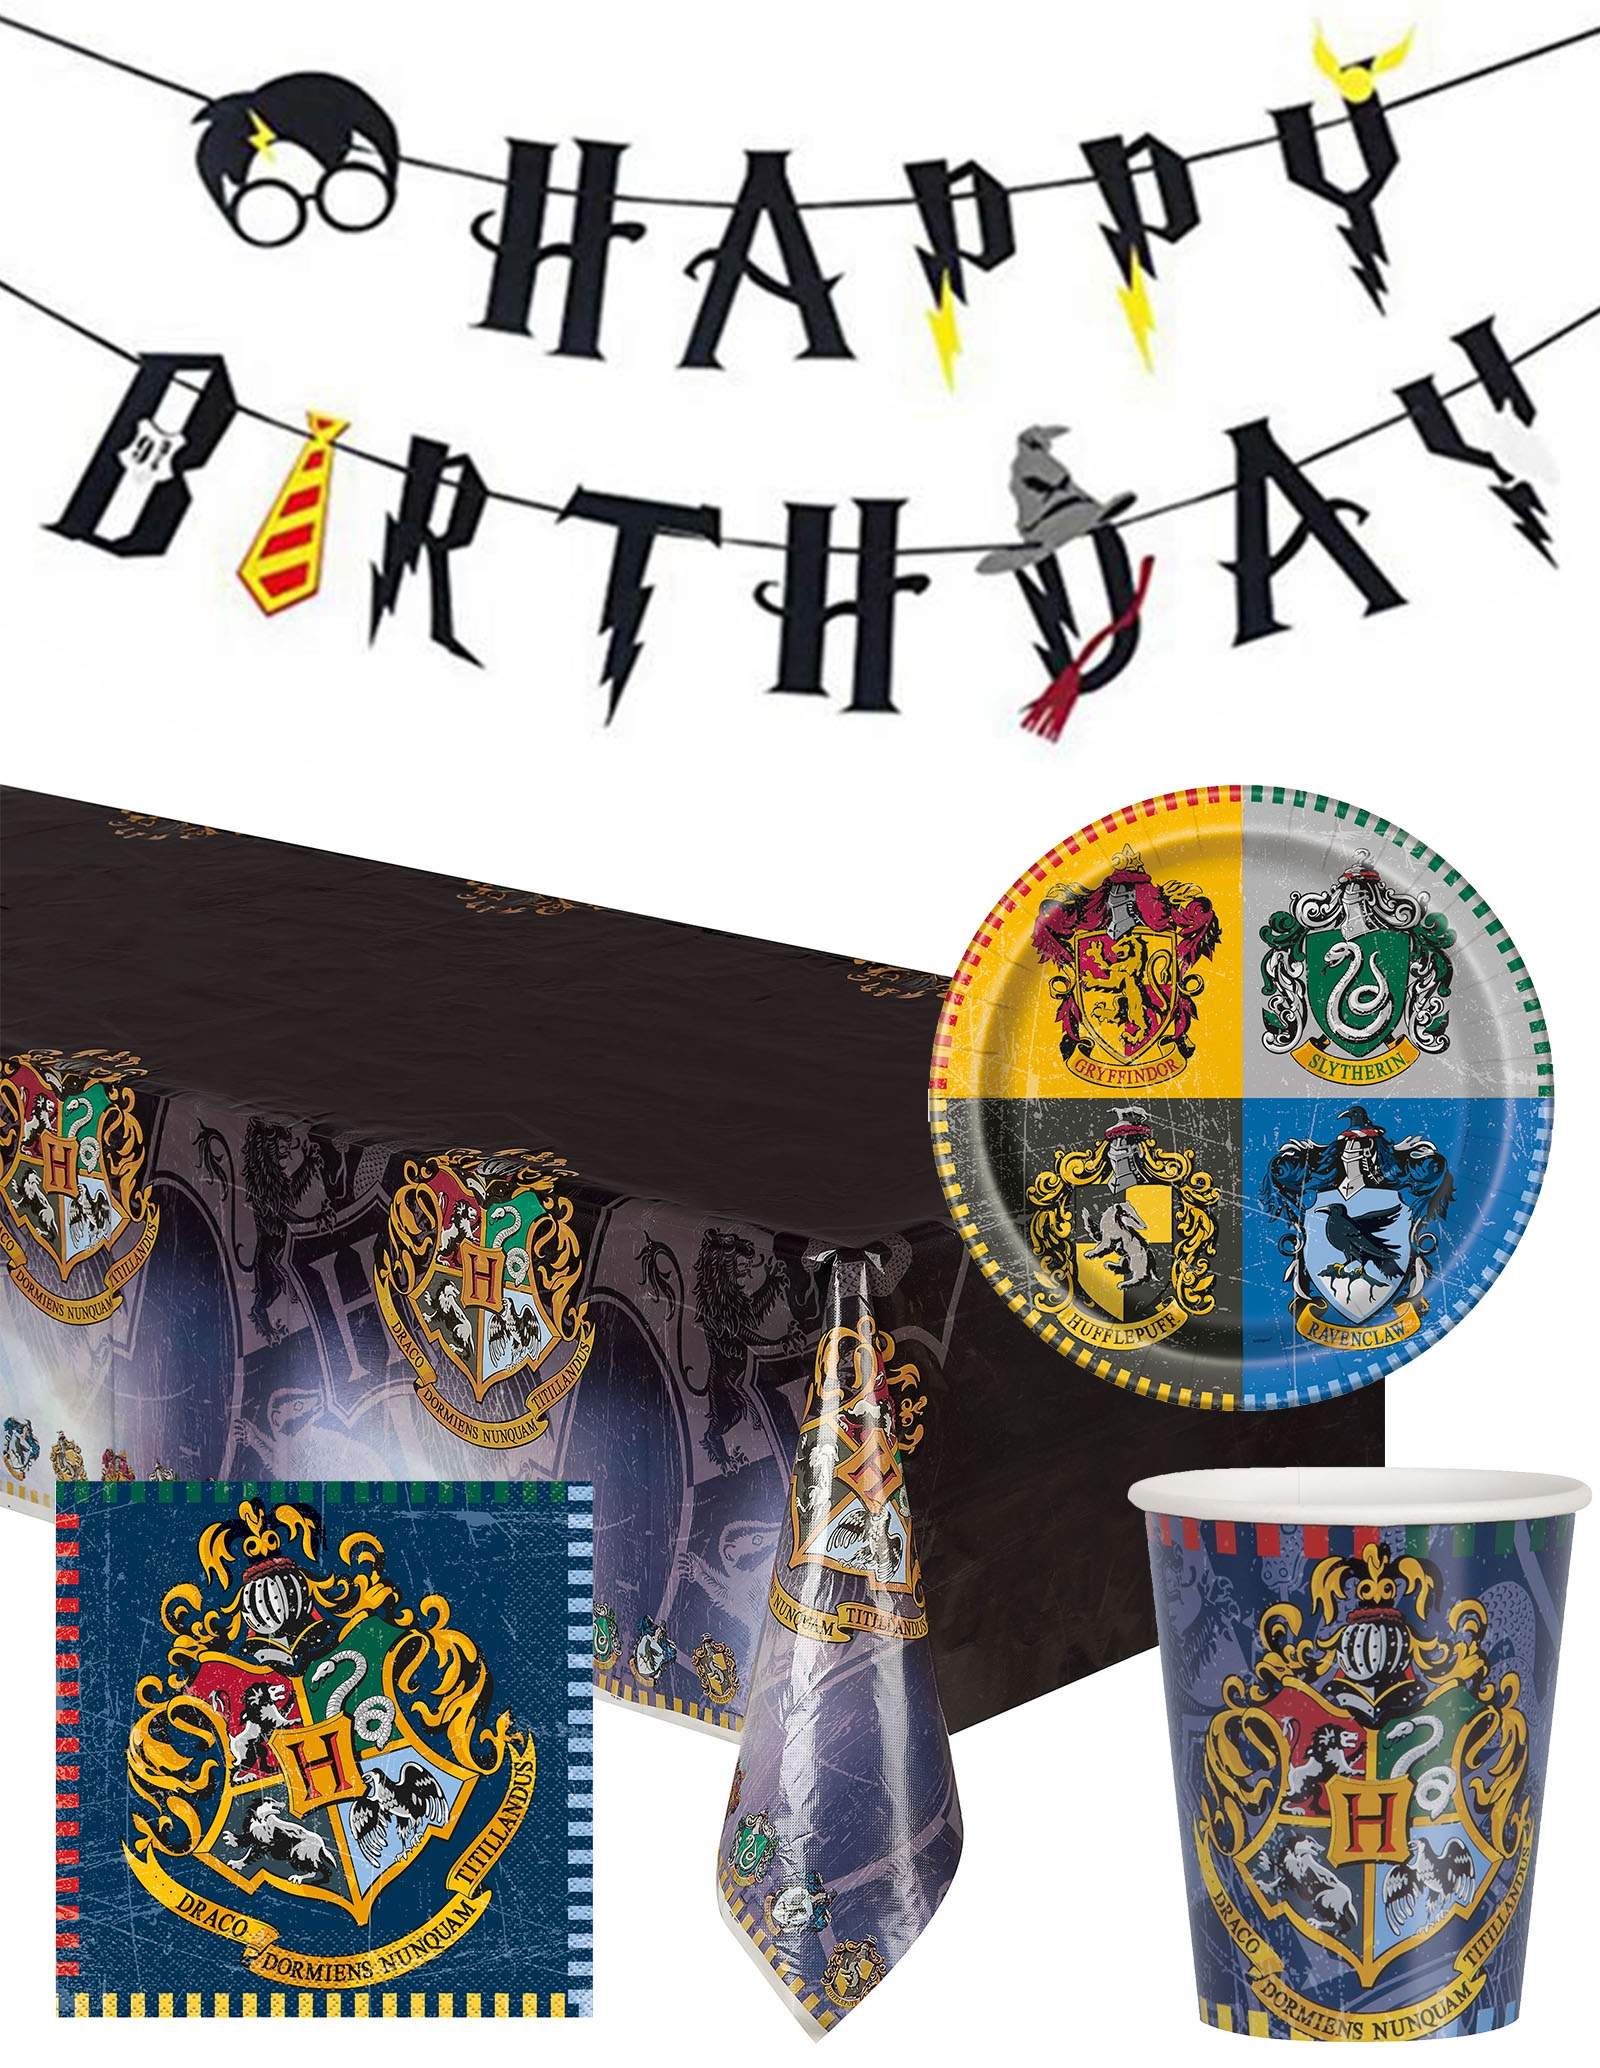 Décoration anniversaire - Kit de décoration Harry Potter - Anniversaire  Harry Potter